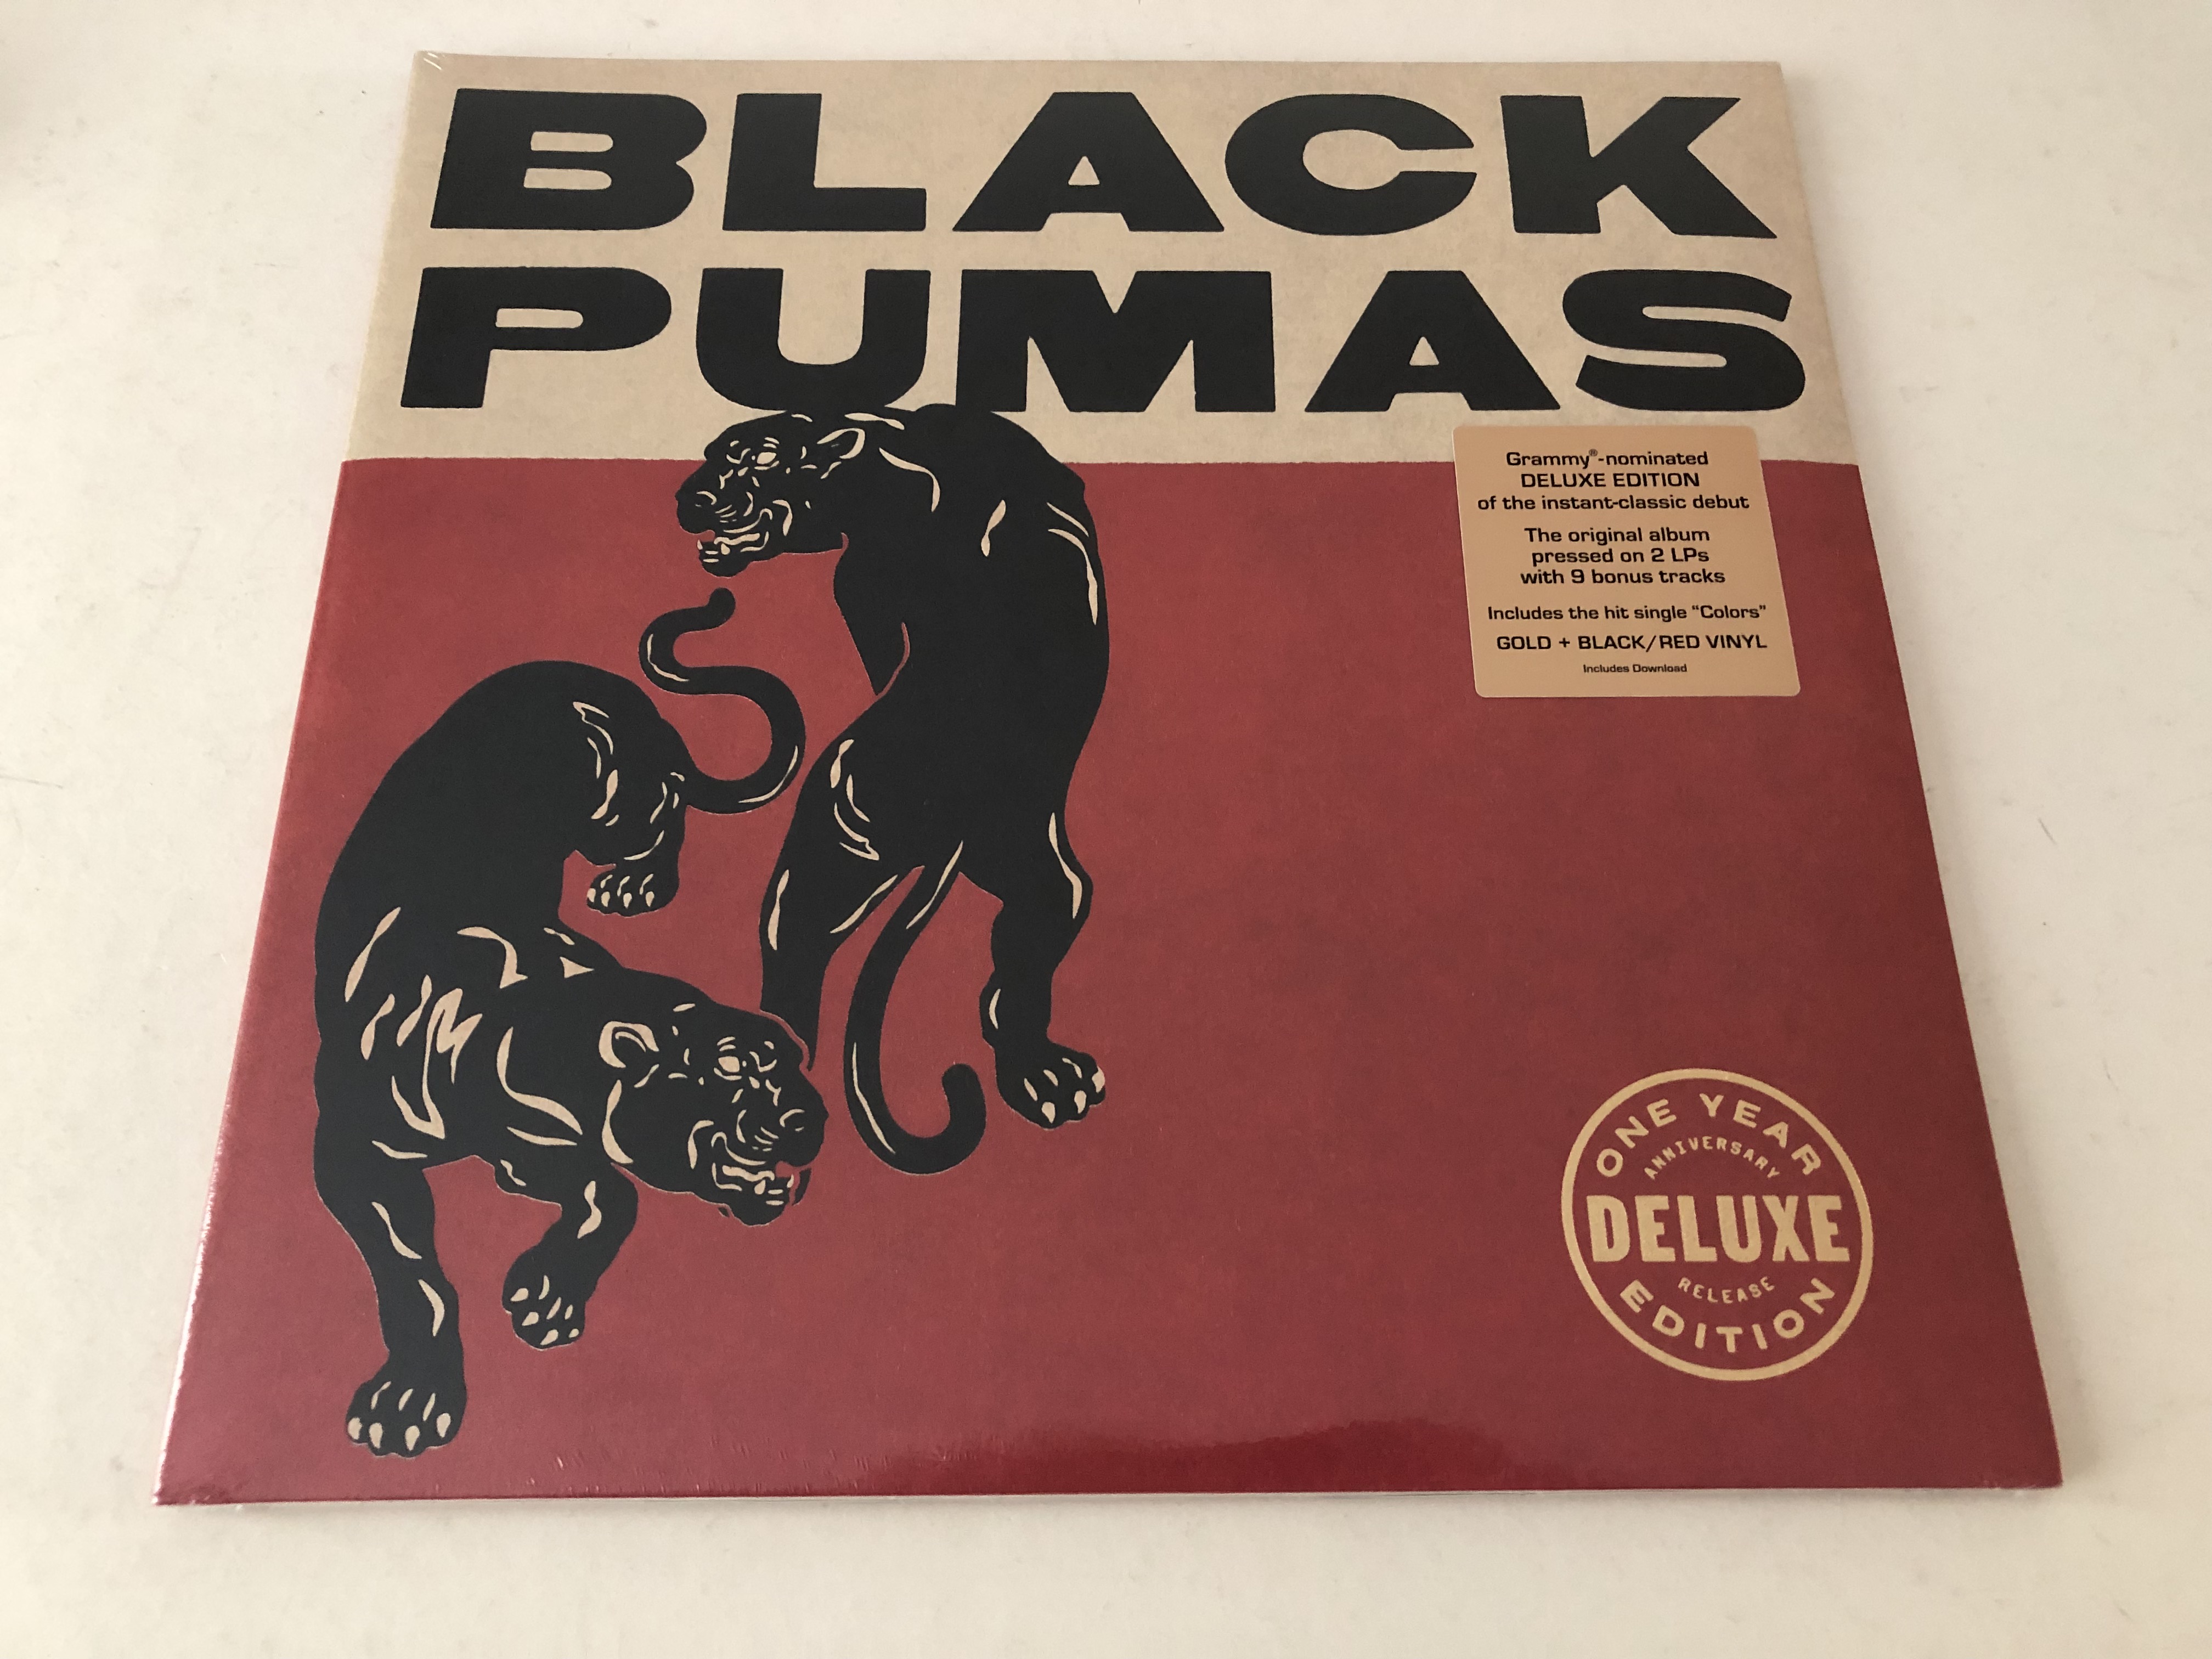 Black Pumas - Premium Edition (GOLD + BLACK / RED Vinyl)